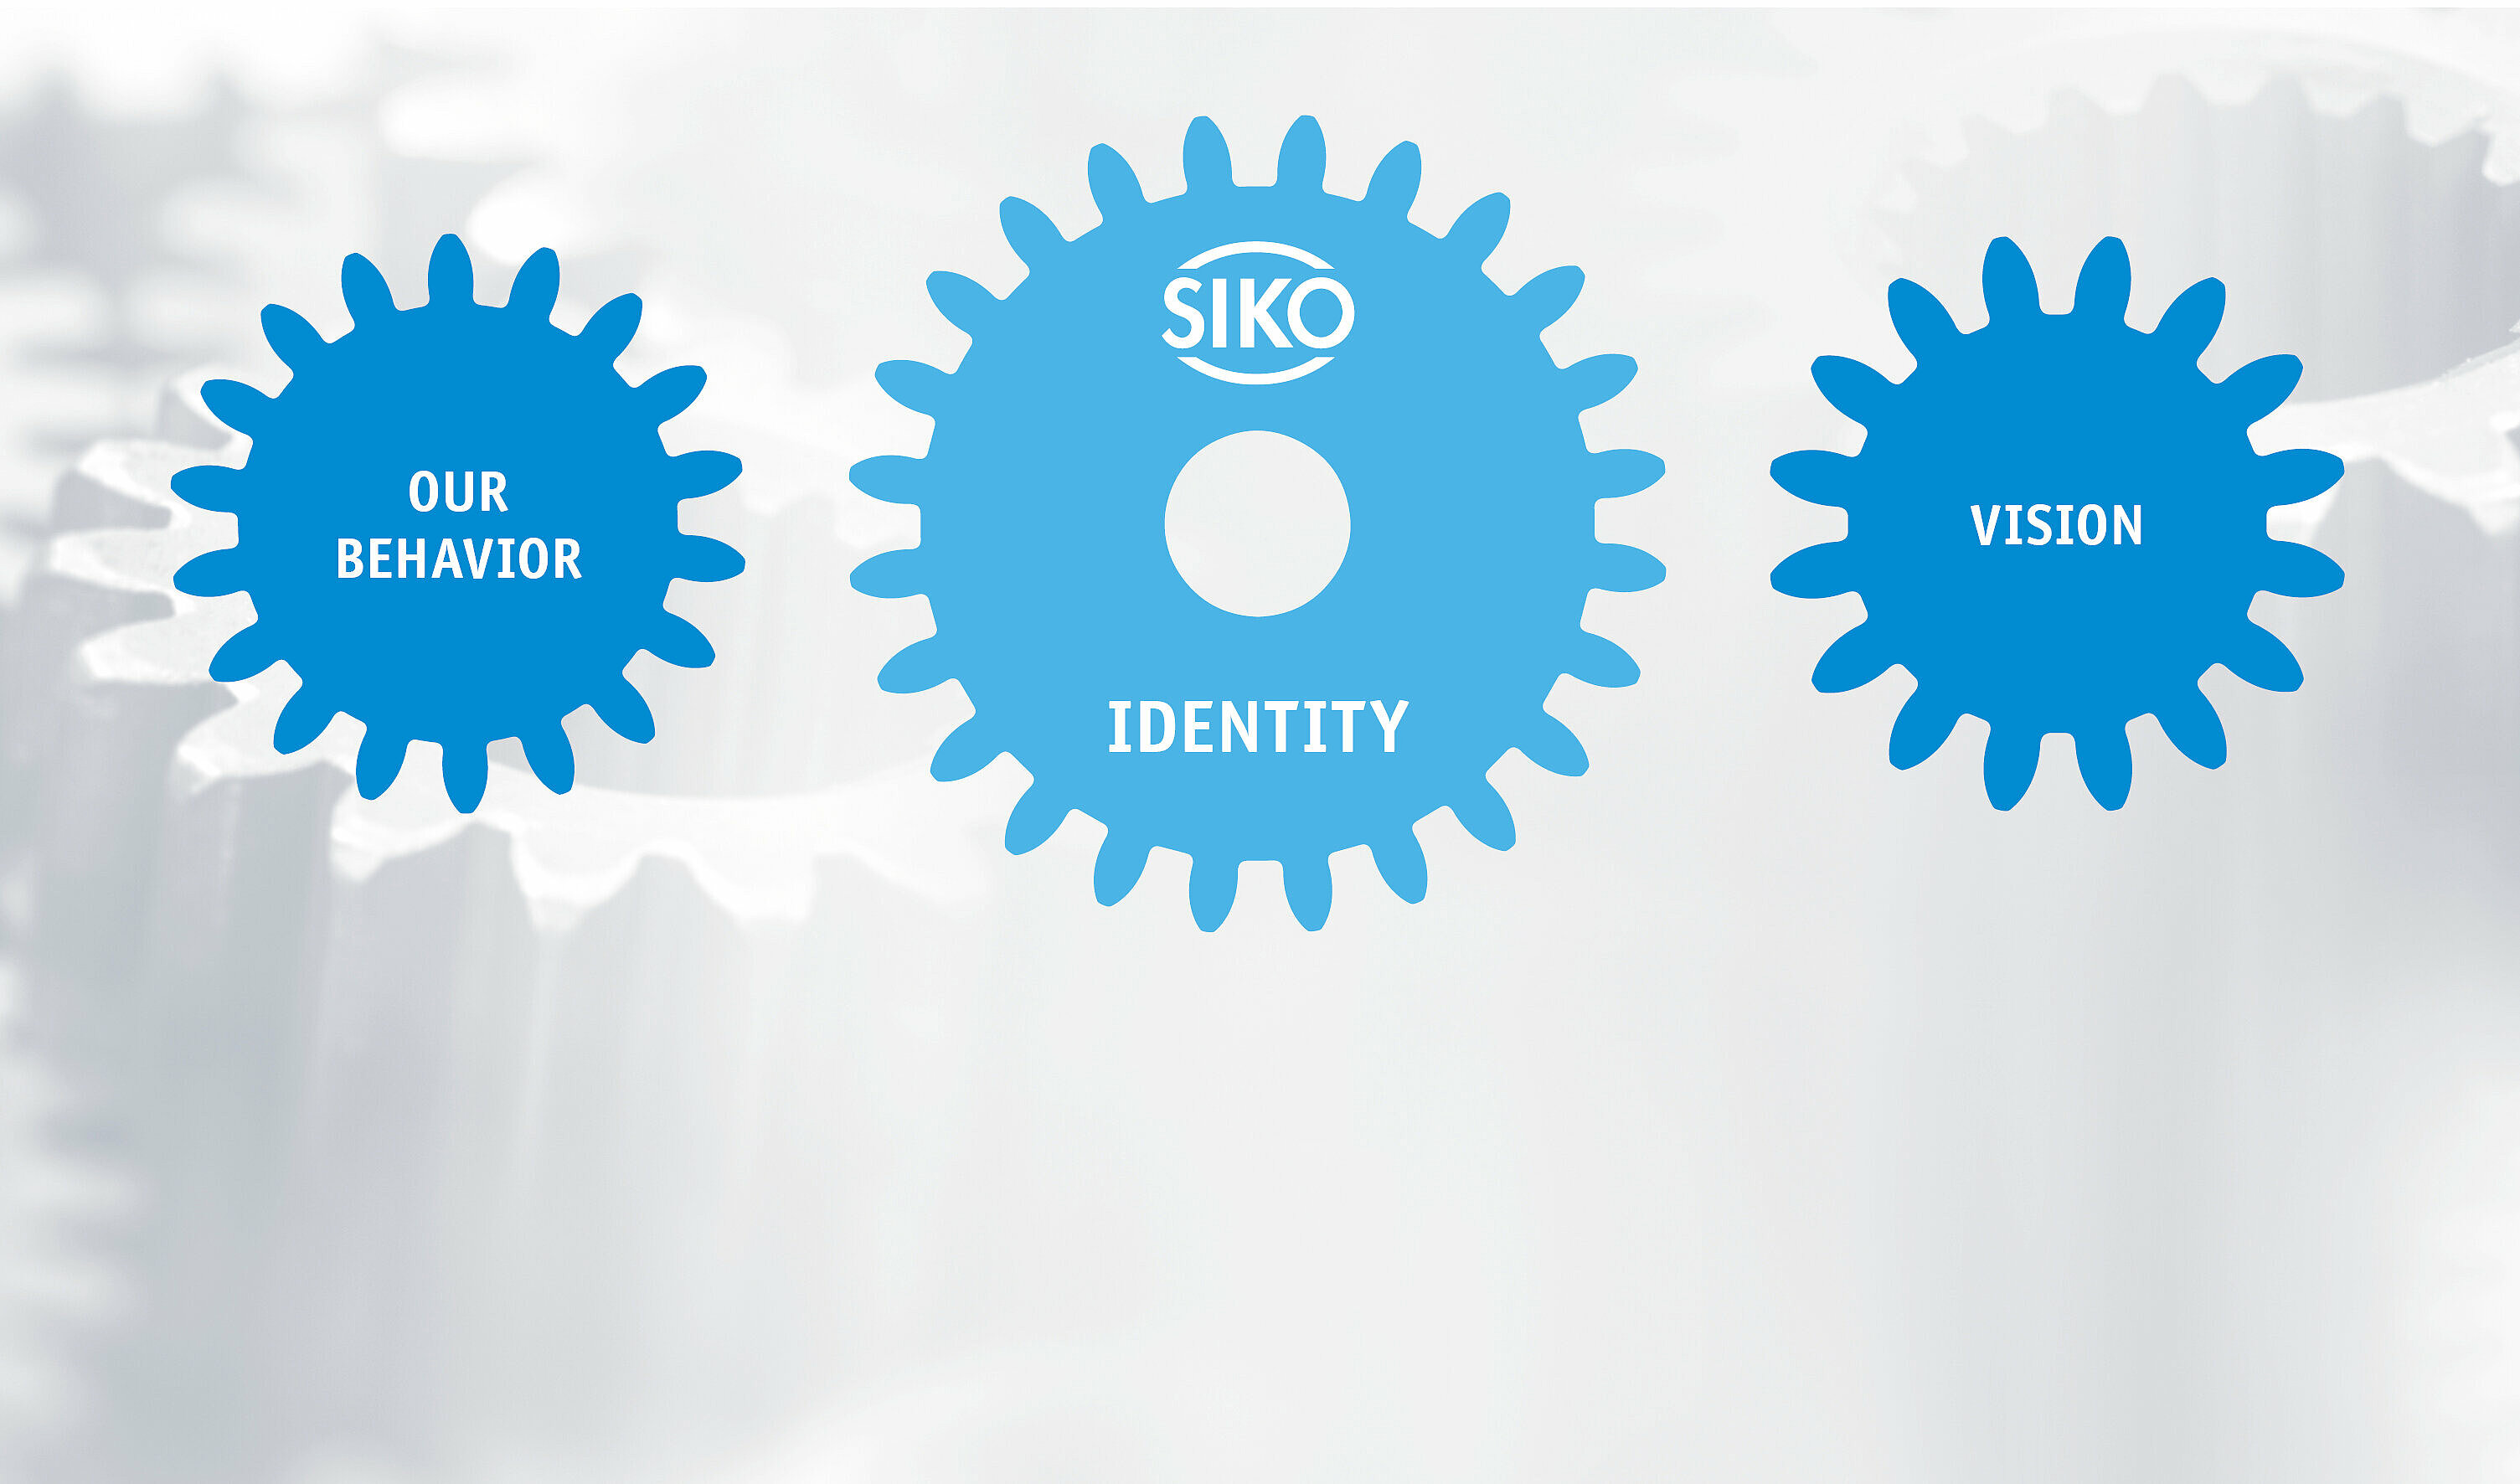 Puntos clave de la misión corporativa de SIKO representados en engranajes azules